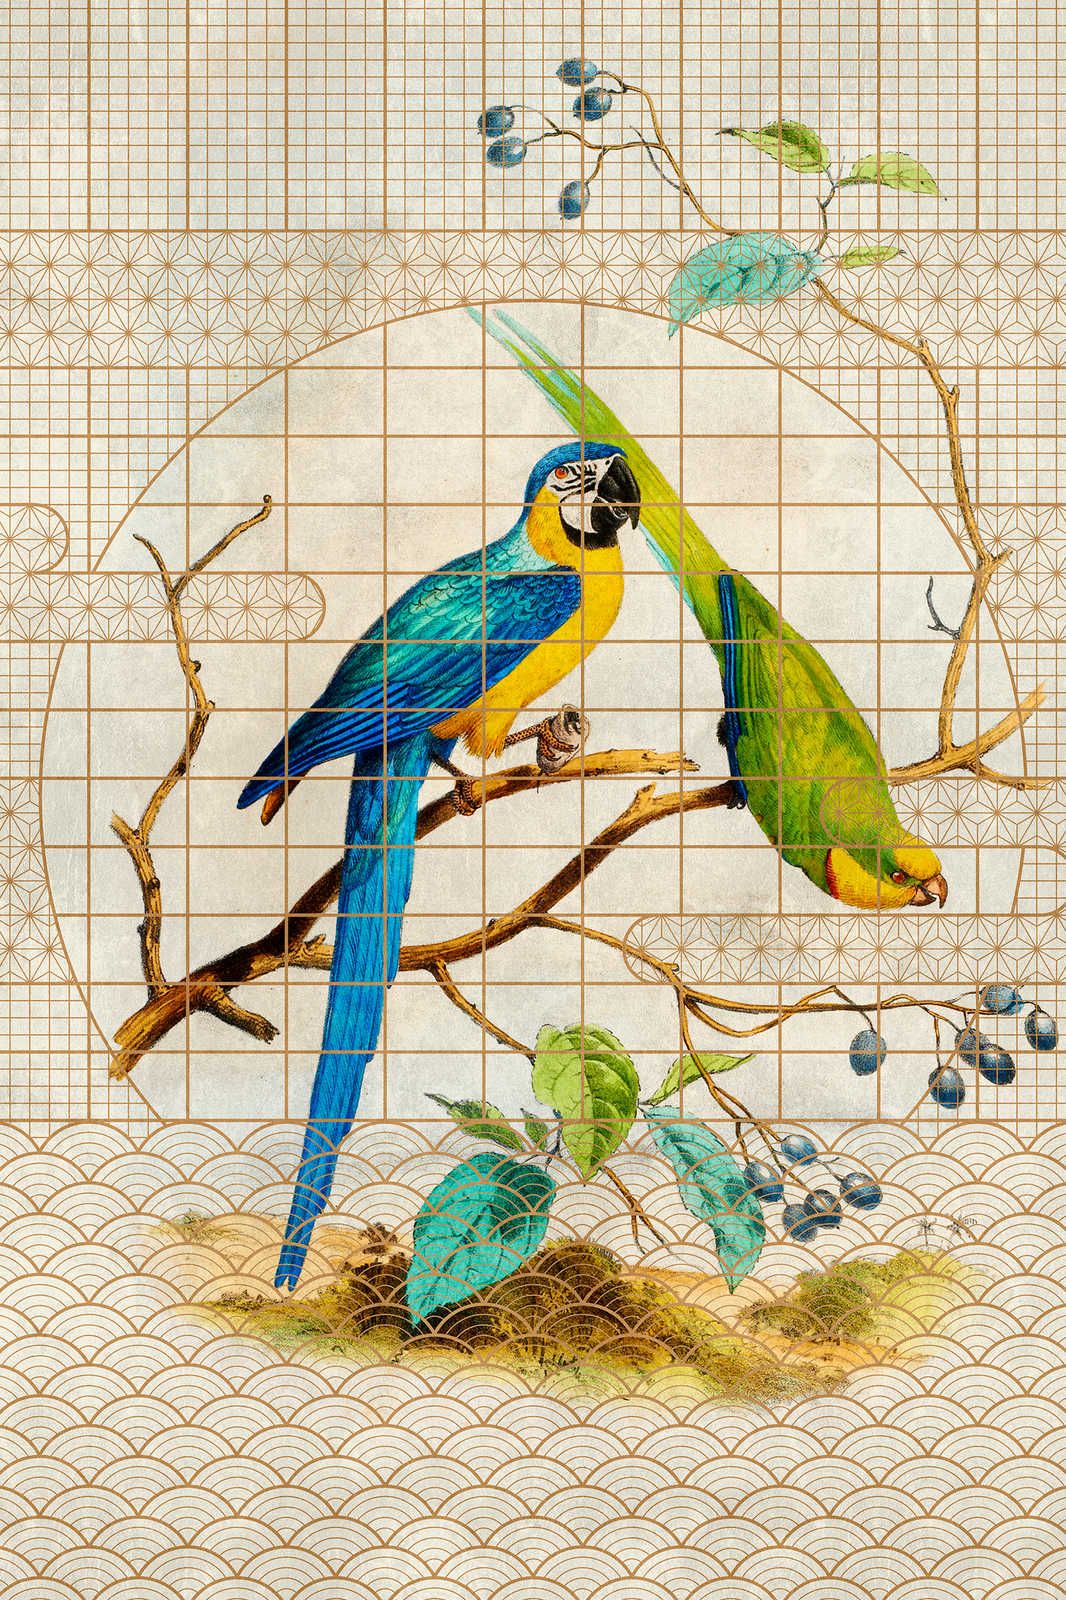             Volière 3 - Vintage stijl papegaai & gouden patroon canvas schilderij - 0.90 m x 0.60 m
        